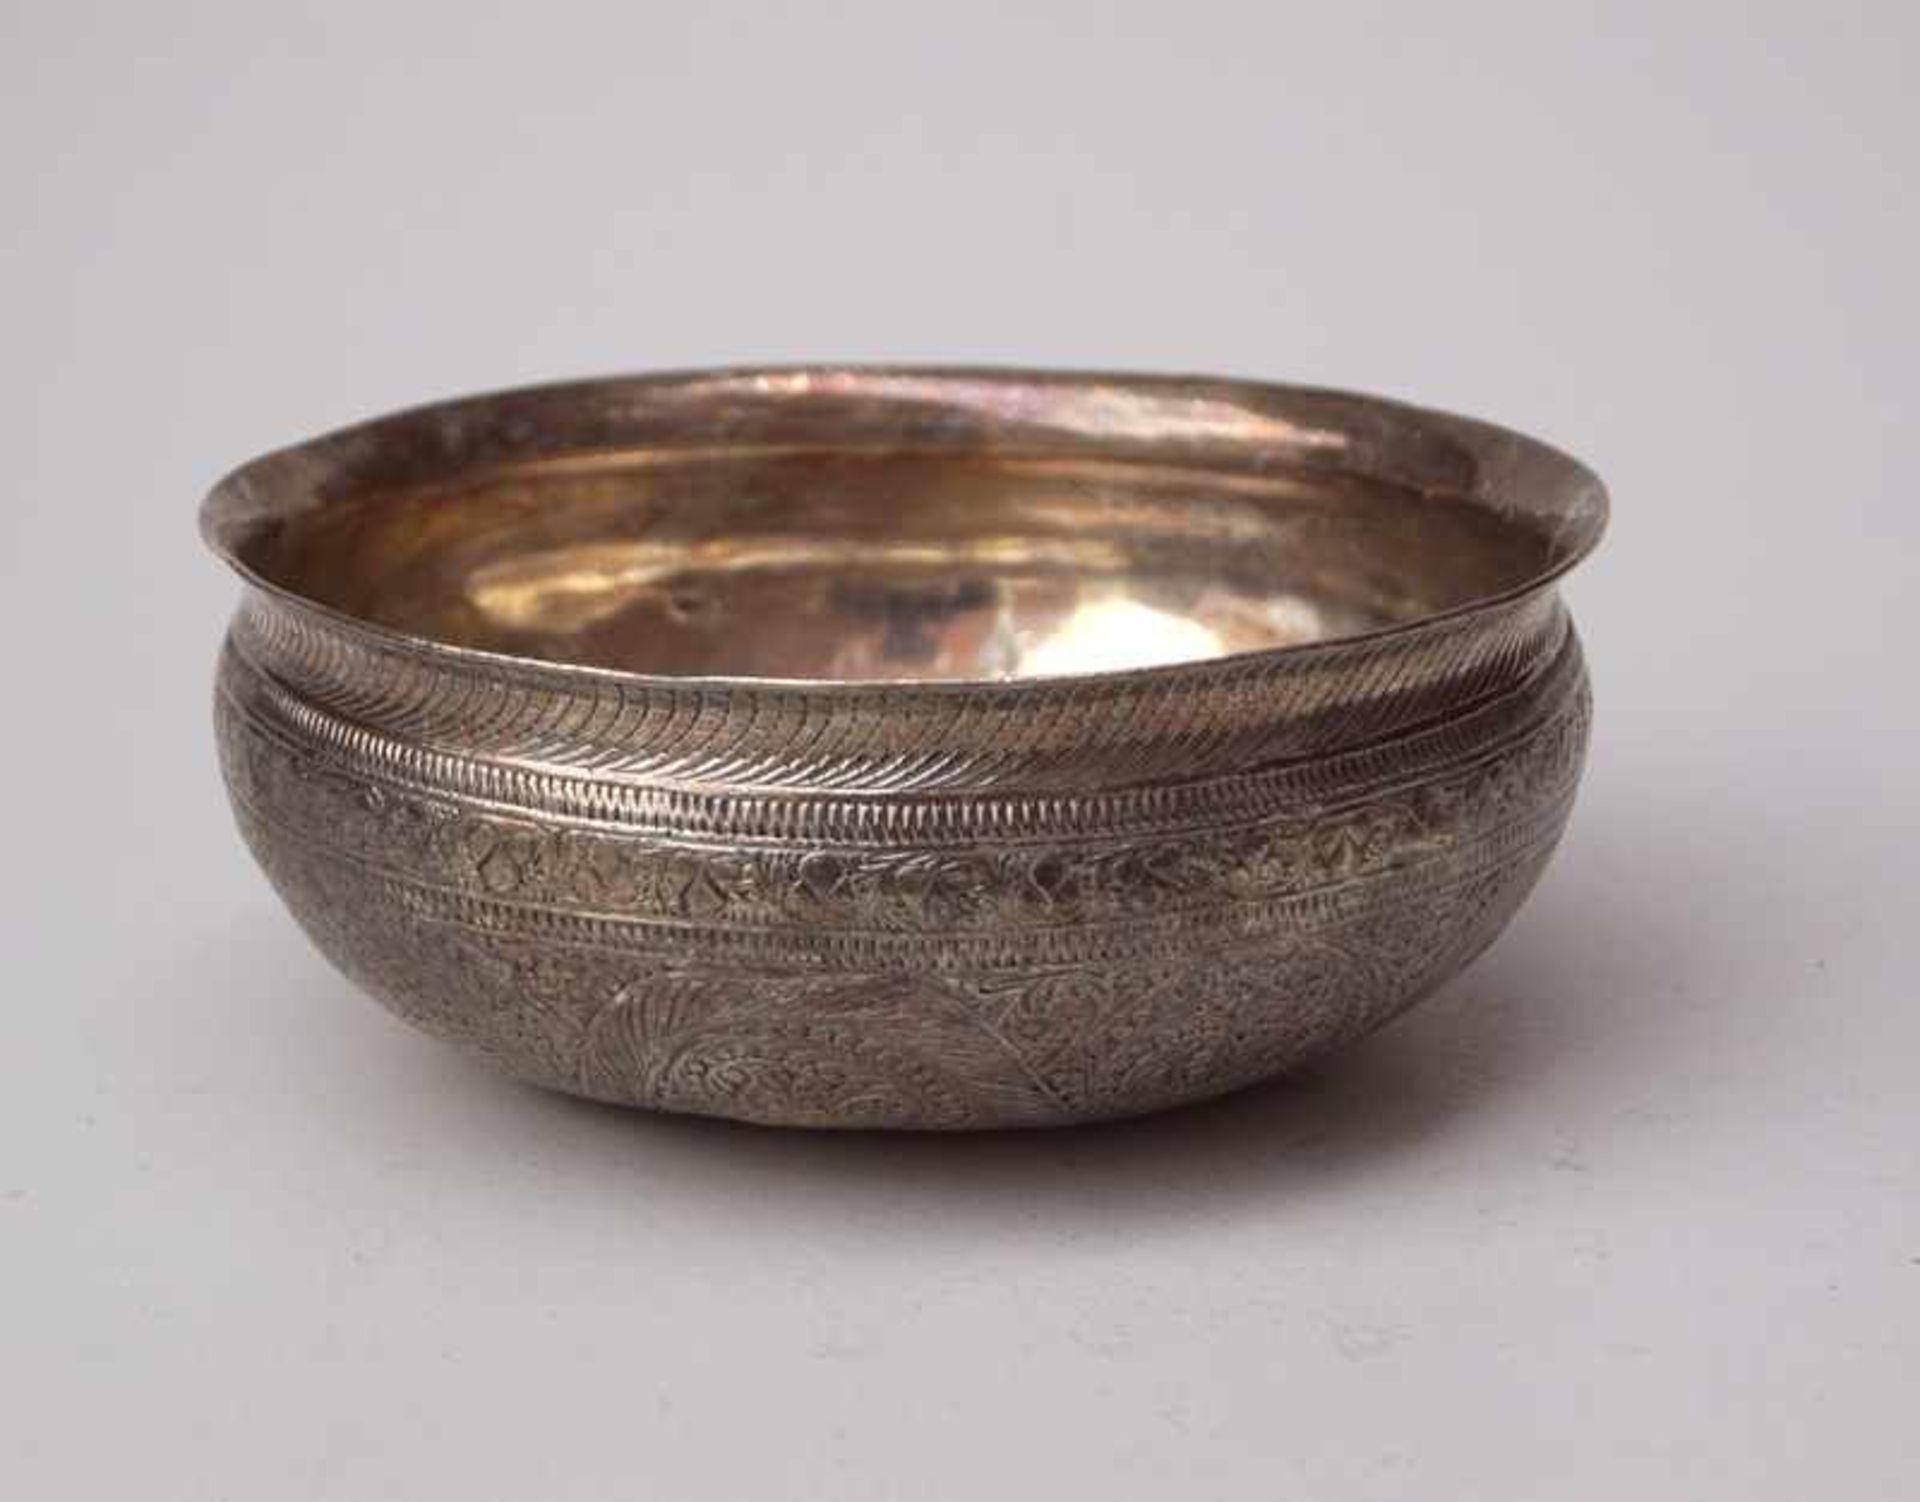 Silberne Schale, Syrien?, 19. Jhd.ziselierte Ornamentik mit Blatt- und Rankenwerk, 900er Silber